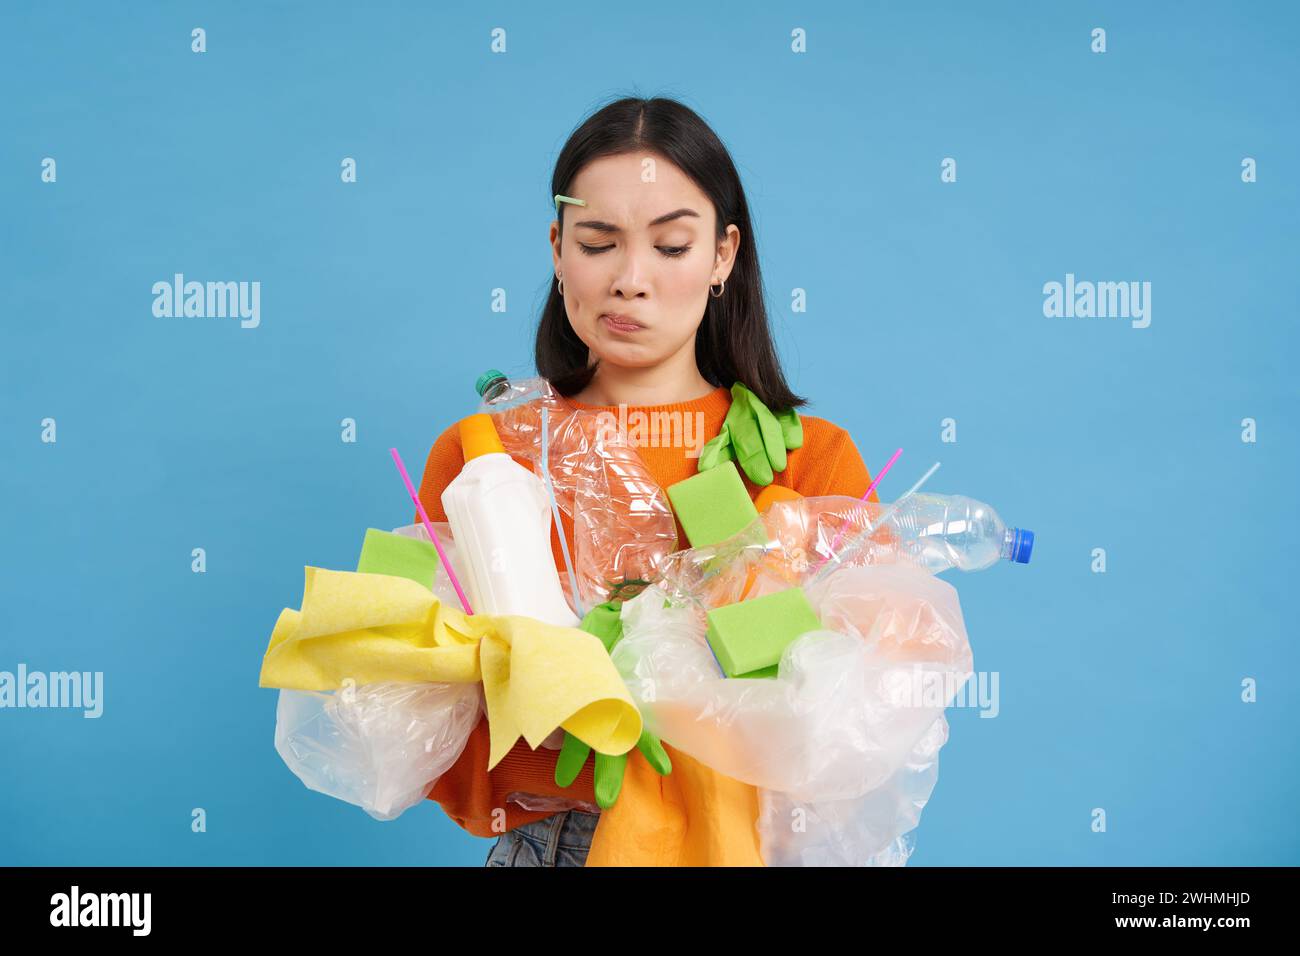 El cuidado de la naturaleza. Mujer joven sosteniendo botellas de plástico y residuos. Los voluntarios compilaron basura y la llevaron al reciclaje. azul es Foto de stock